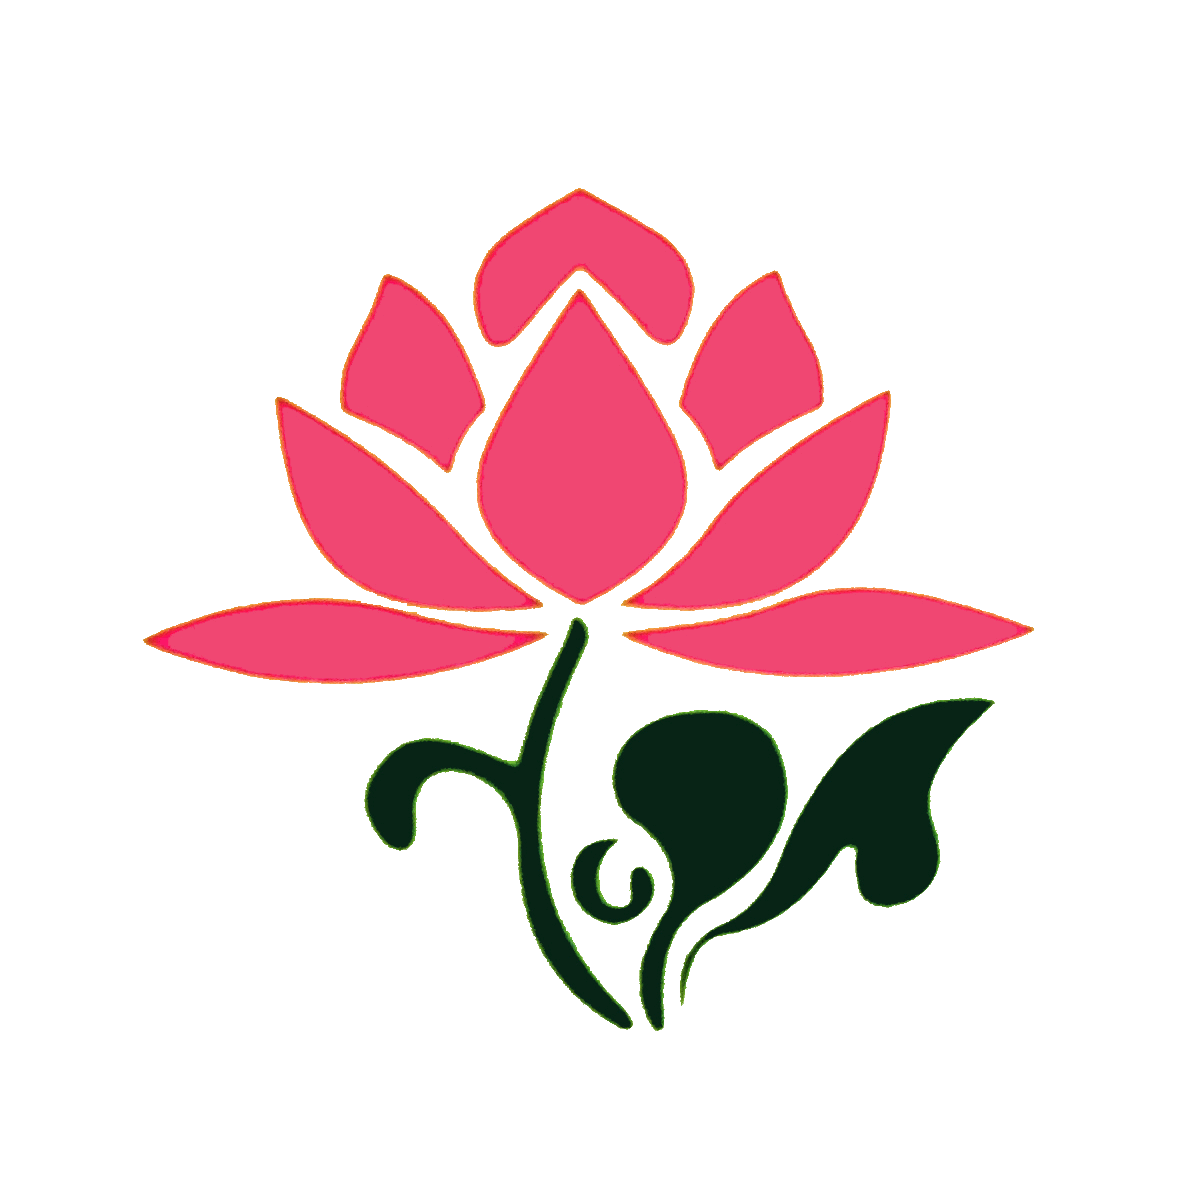 Lotus clipart red lotus, Lotus red lotus Transparent FREE